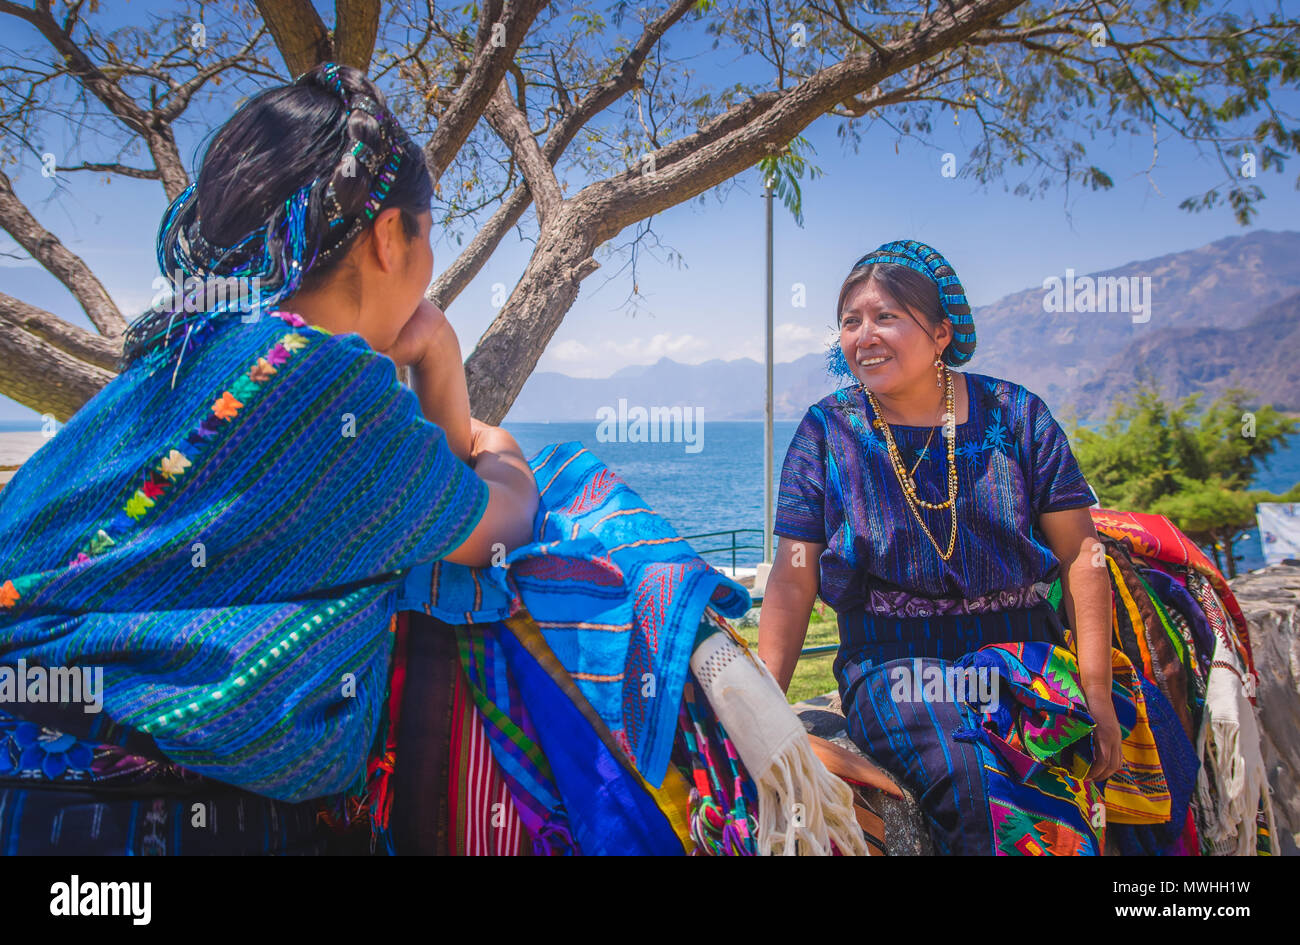 Panajachel, Guatemala - April, 25, 2018: Im freien Blick auf unidentifed indigene Frau, tragen typische Kleidung sprechen Jede otherin vor Atitlan See und Vulkan im Hintergrund in Guatemala Stockfoto